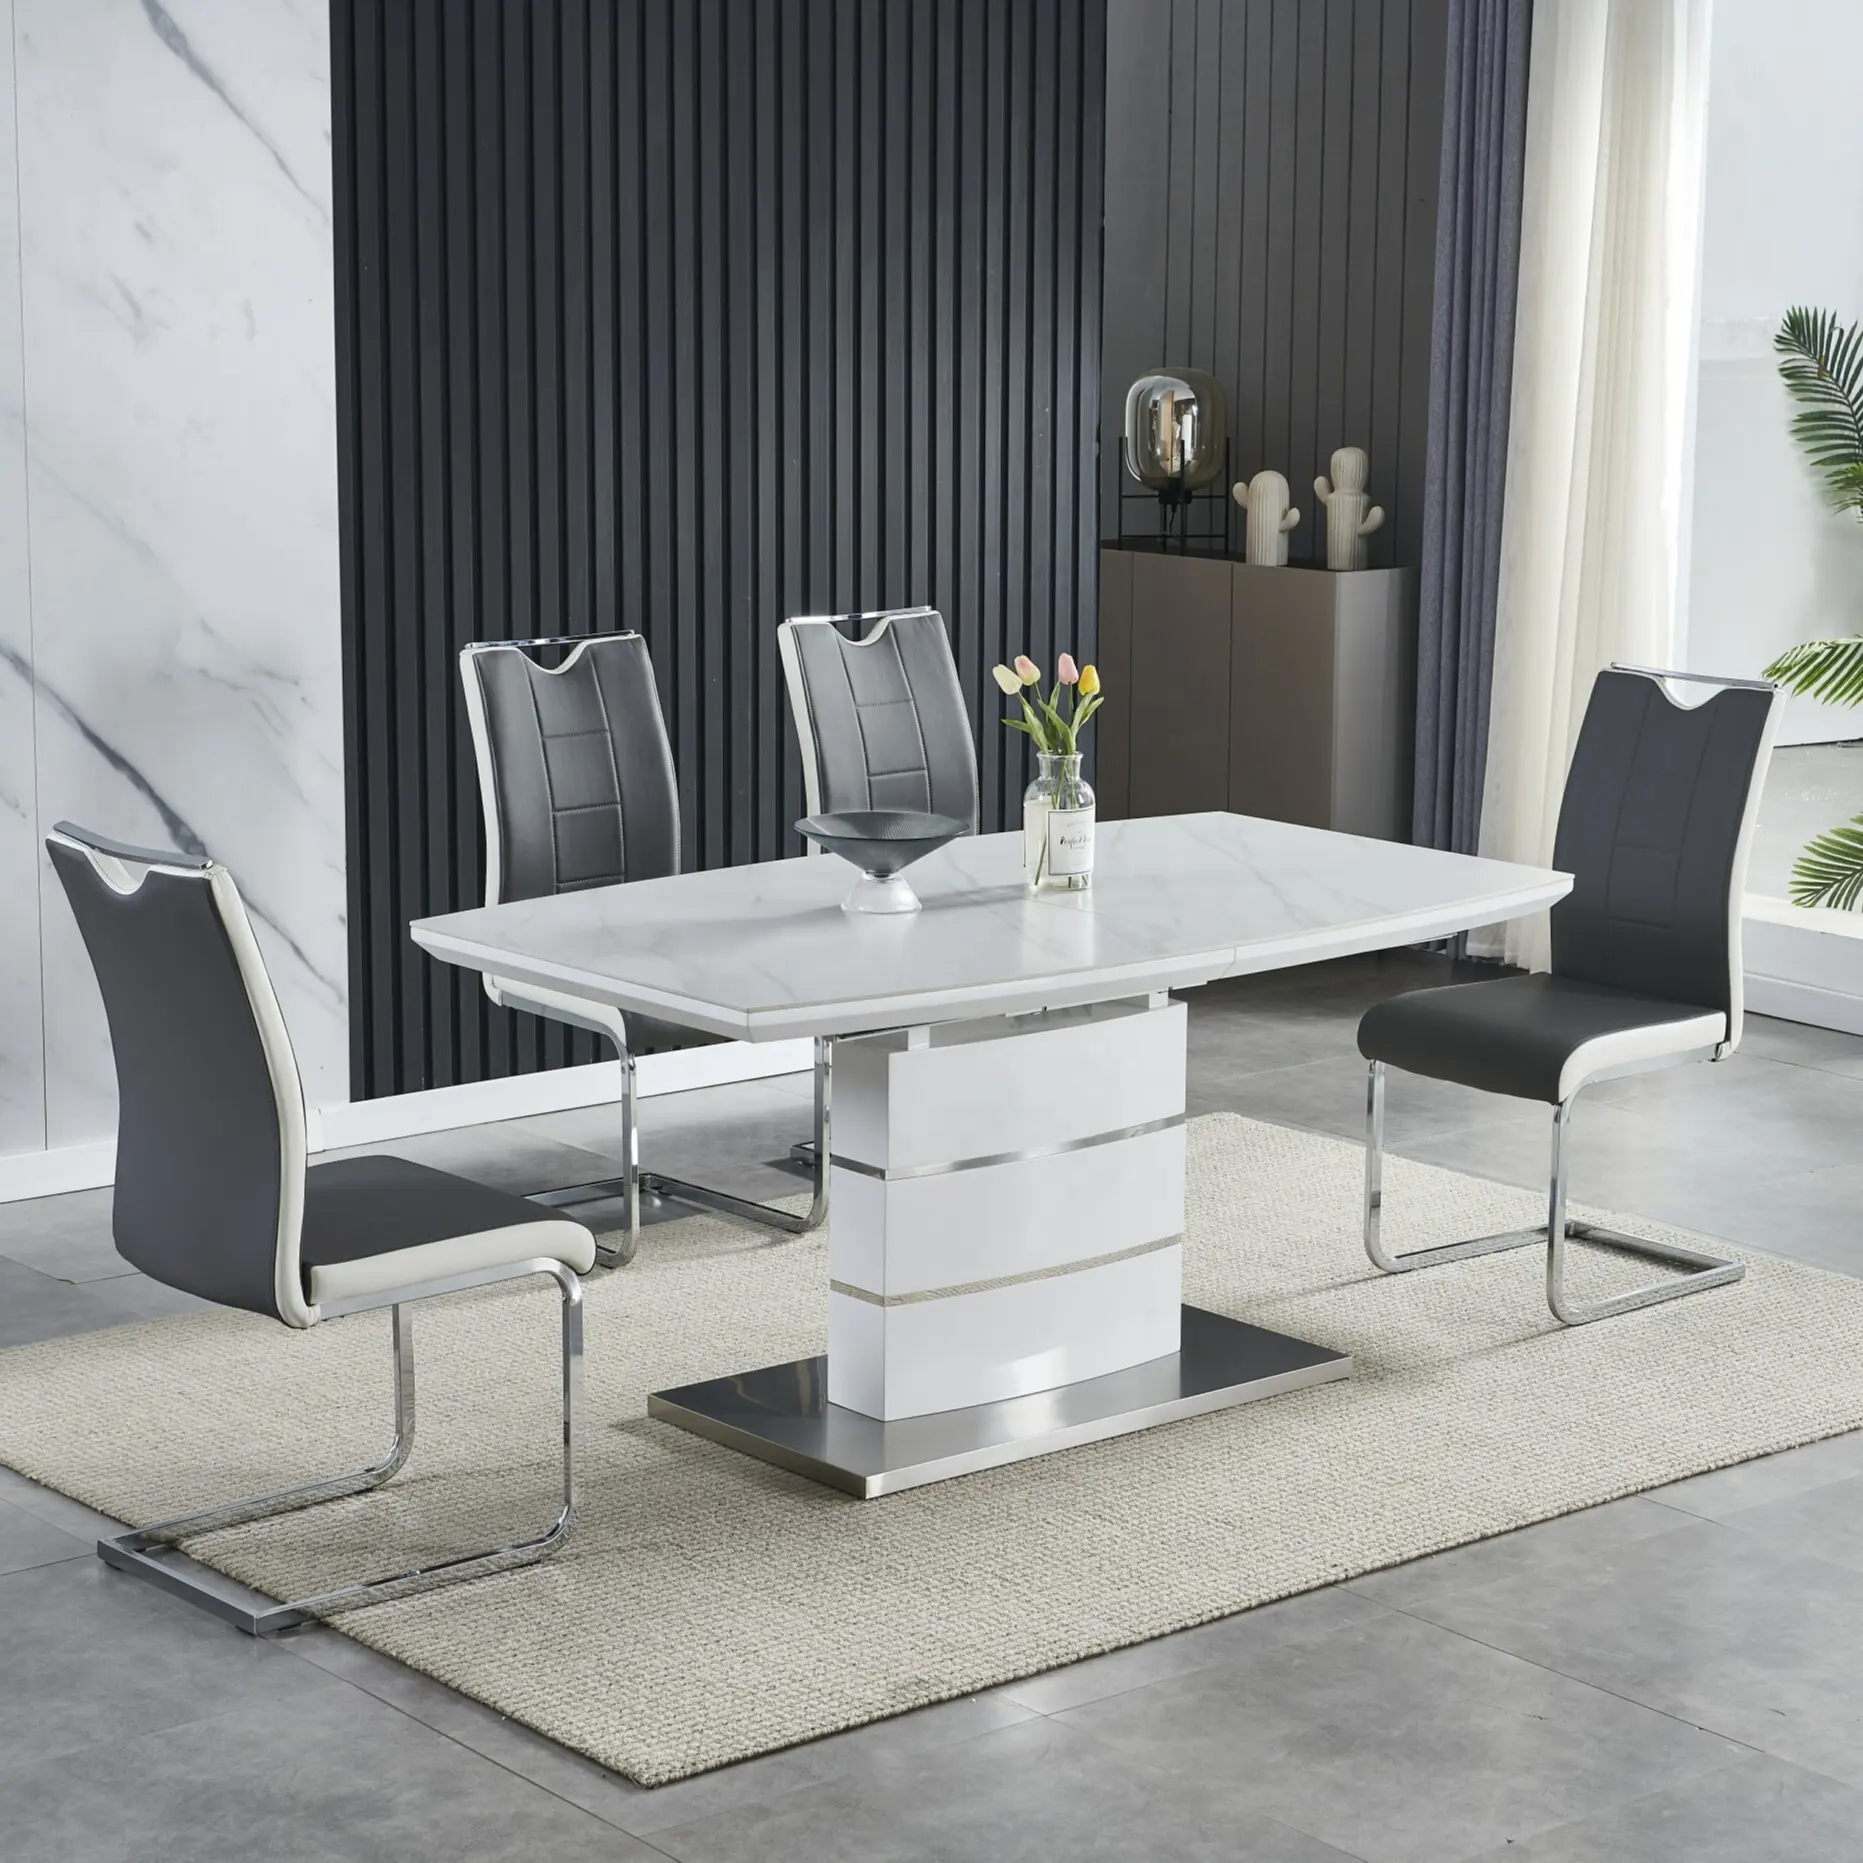 Sinochic fabrika Nordic tarzı lüks Modern MDF üst ahşap Panel mutfak masaları uzatılabilir yemek masası büyük yemek masaları